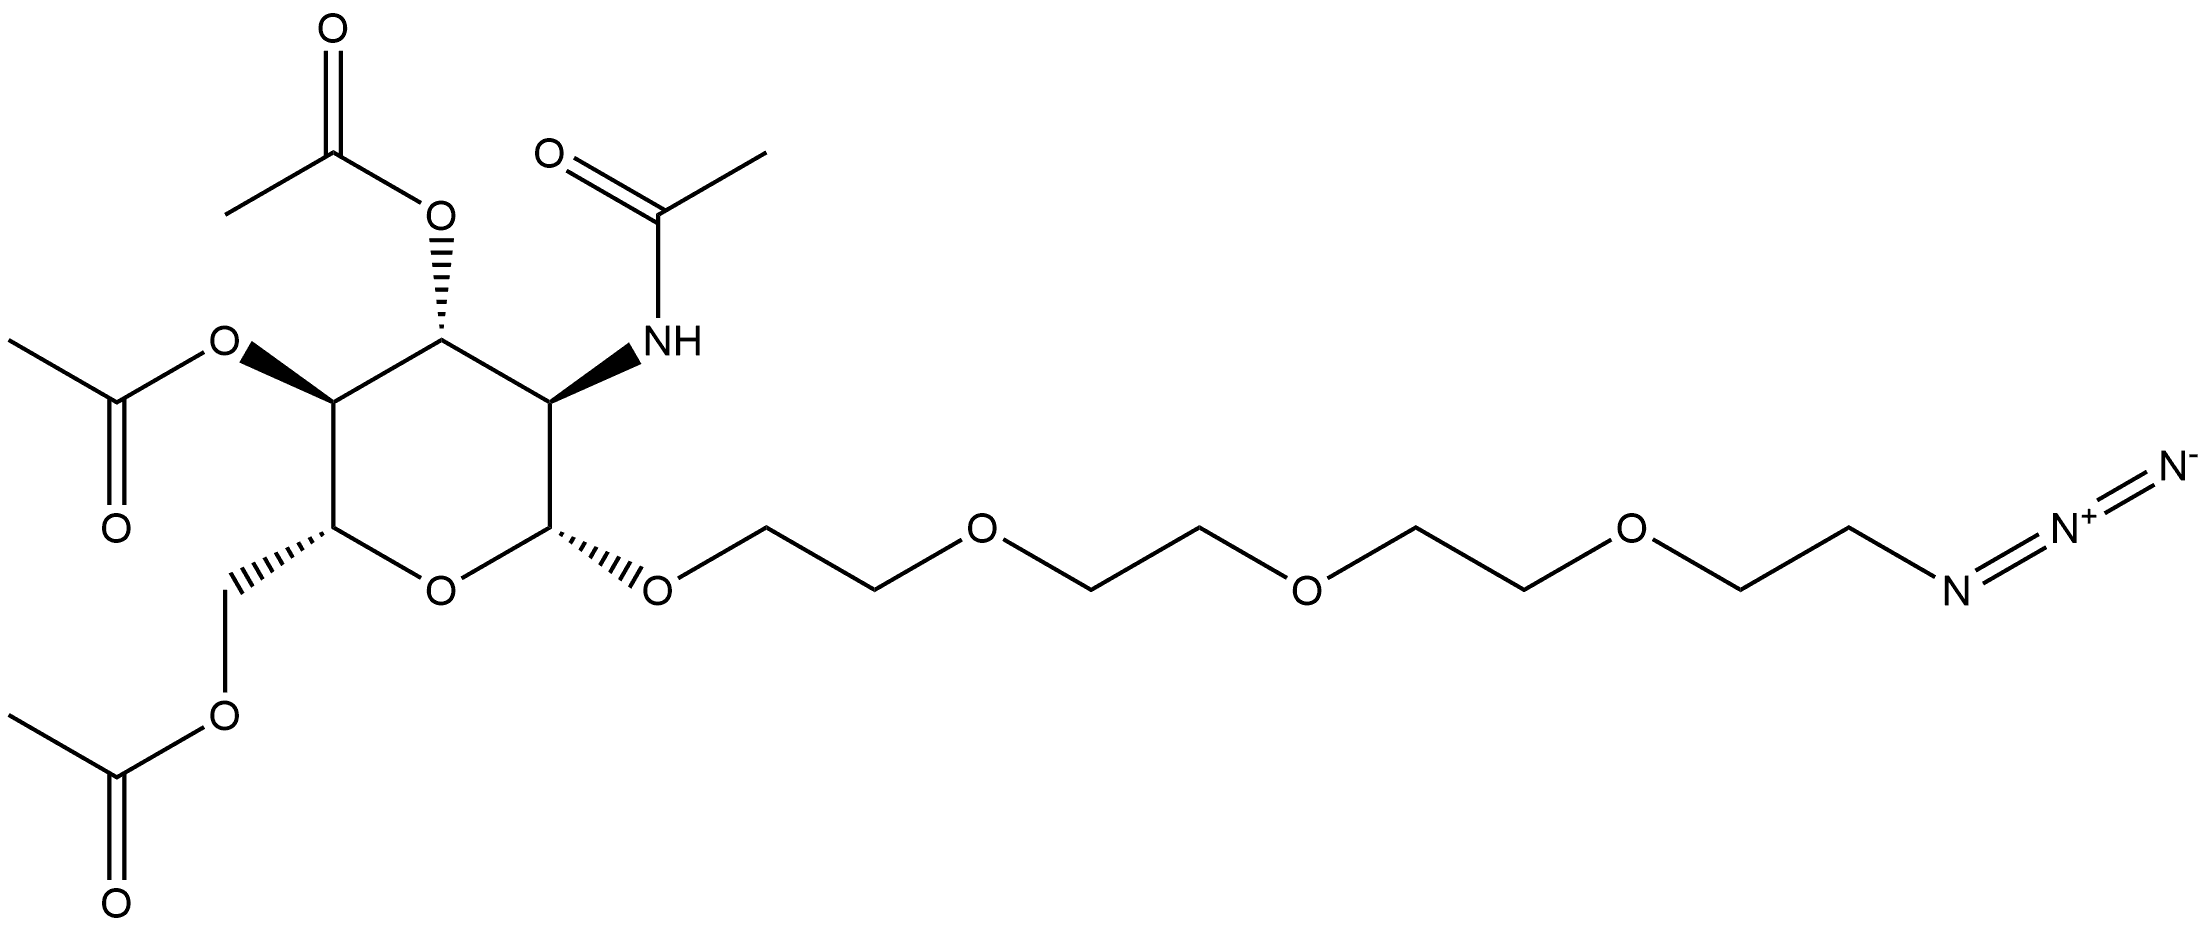 212896-45-2 β-D-Glucopyranoside, 2-[2-[2-(2-azidoethoxy)ethoxy]ethoxy]ethyl 2-(acetylamino)-2-deoxy-, 3,4,6-triacetate